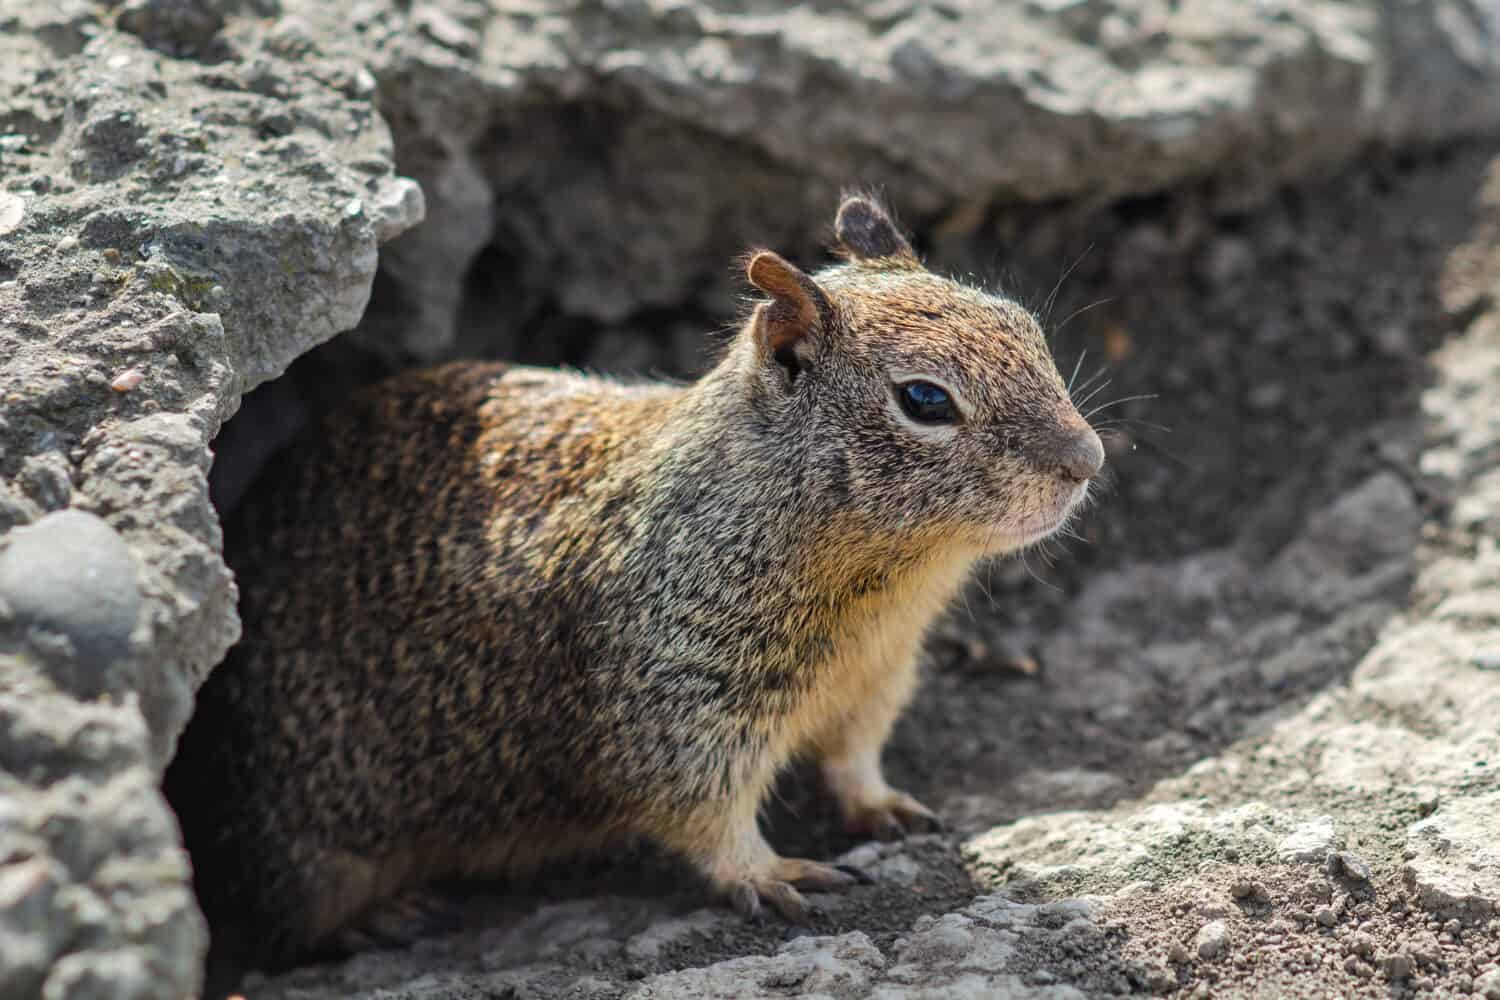 Uno scoiattolo di terra della California si trova fuori dal suo nido - noto come tana - e sembra guardare la telecamera.